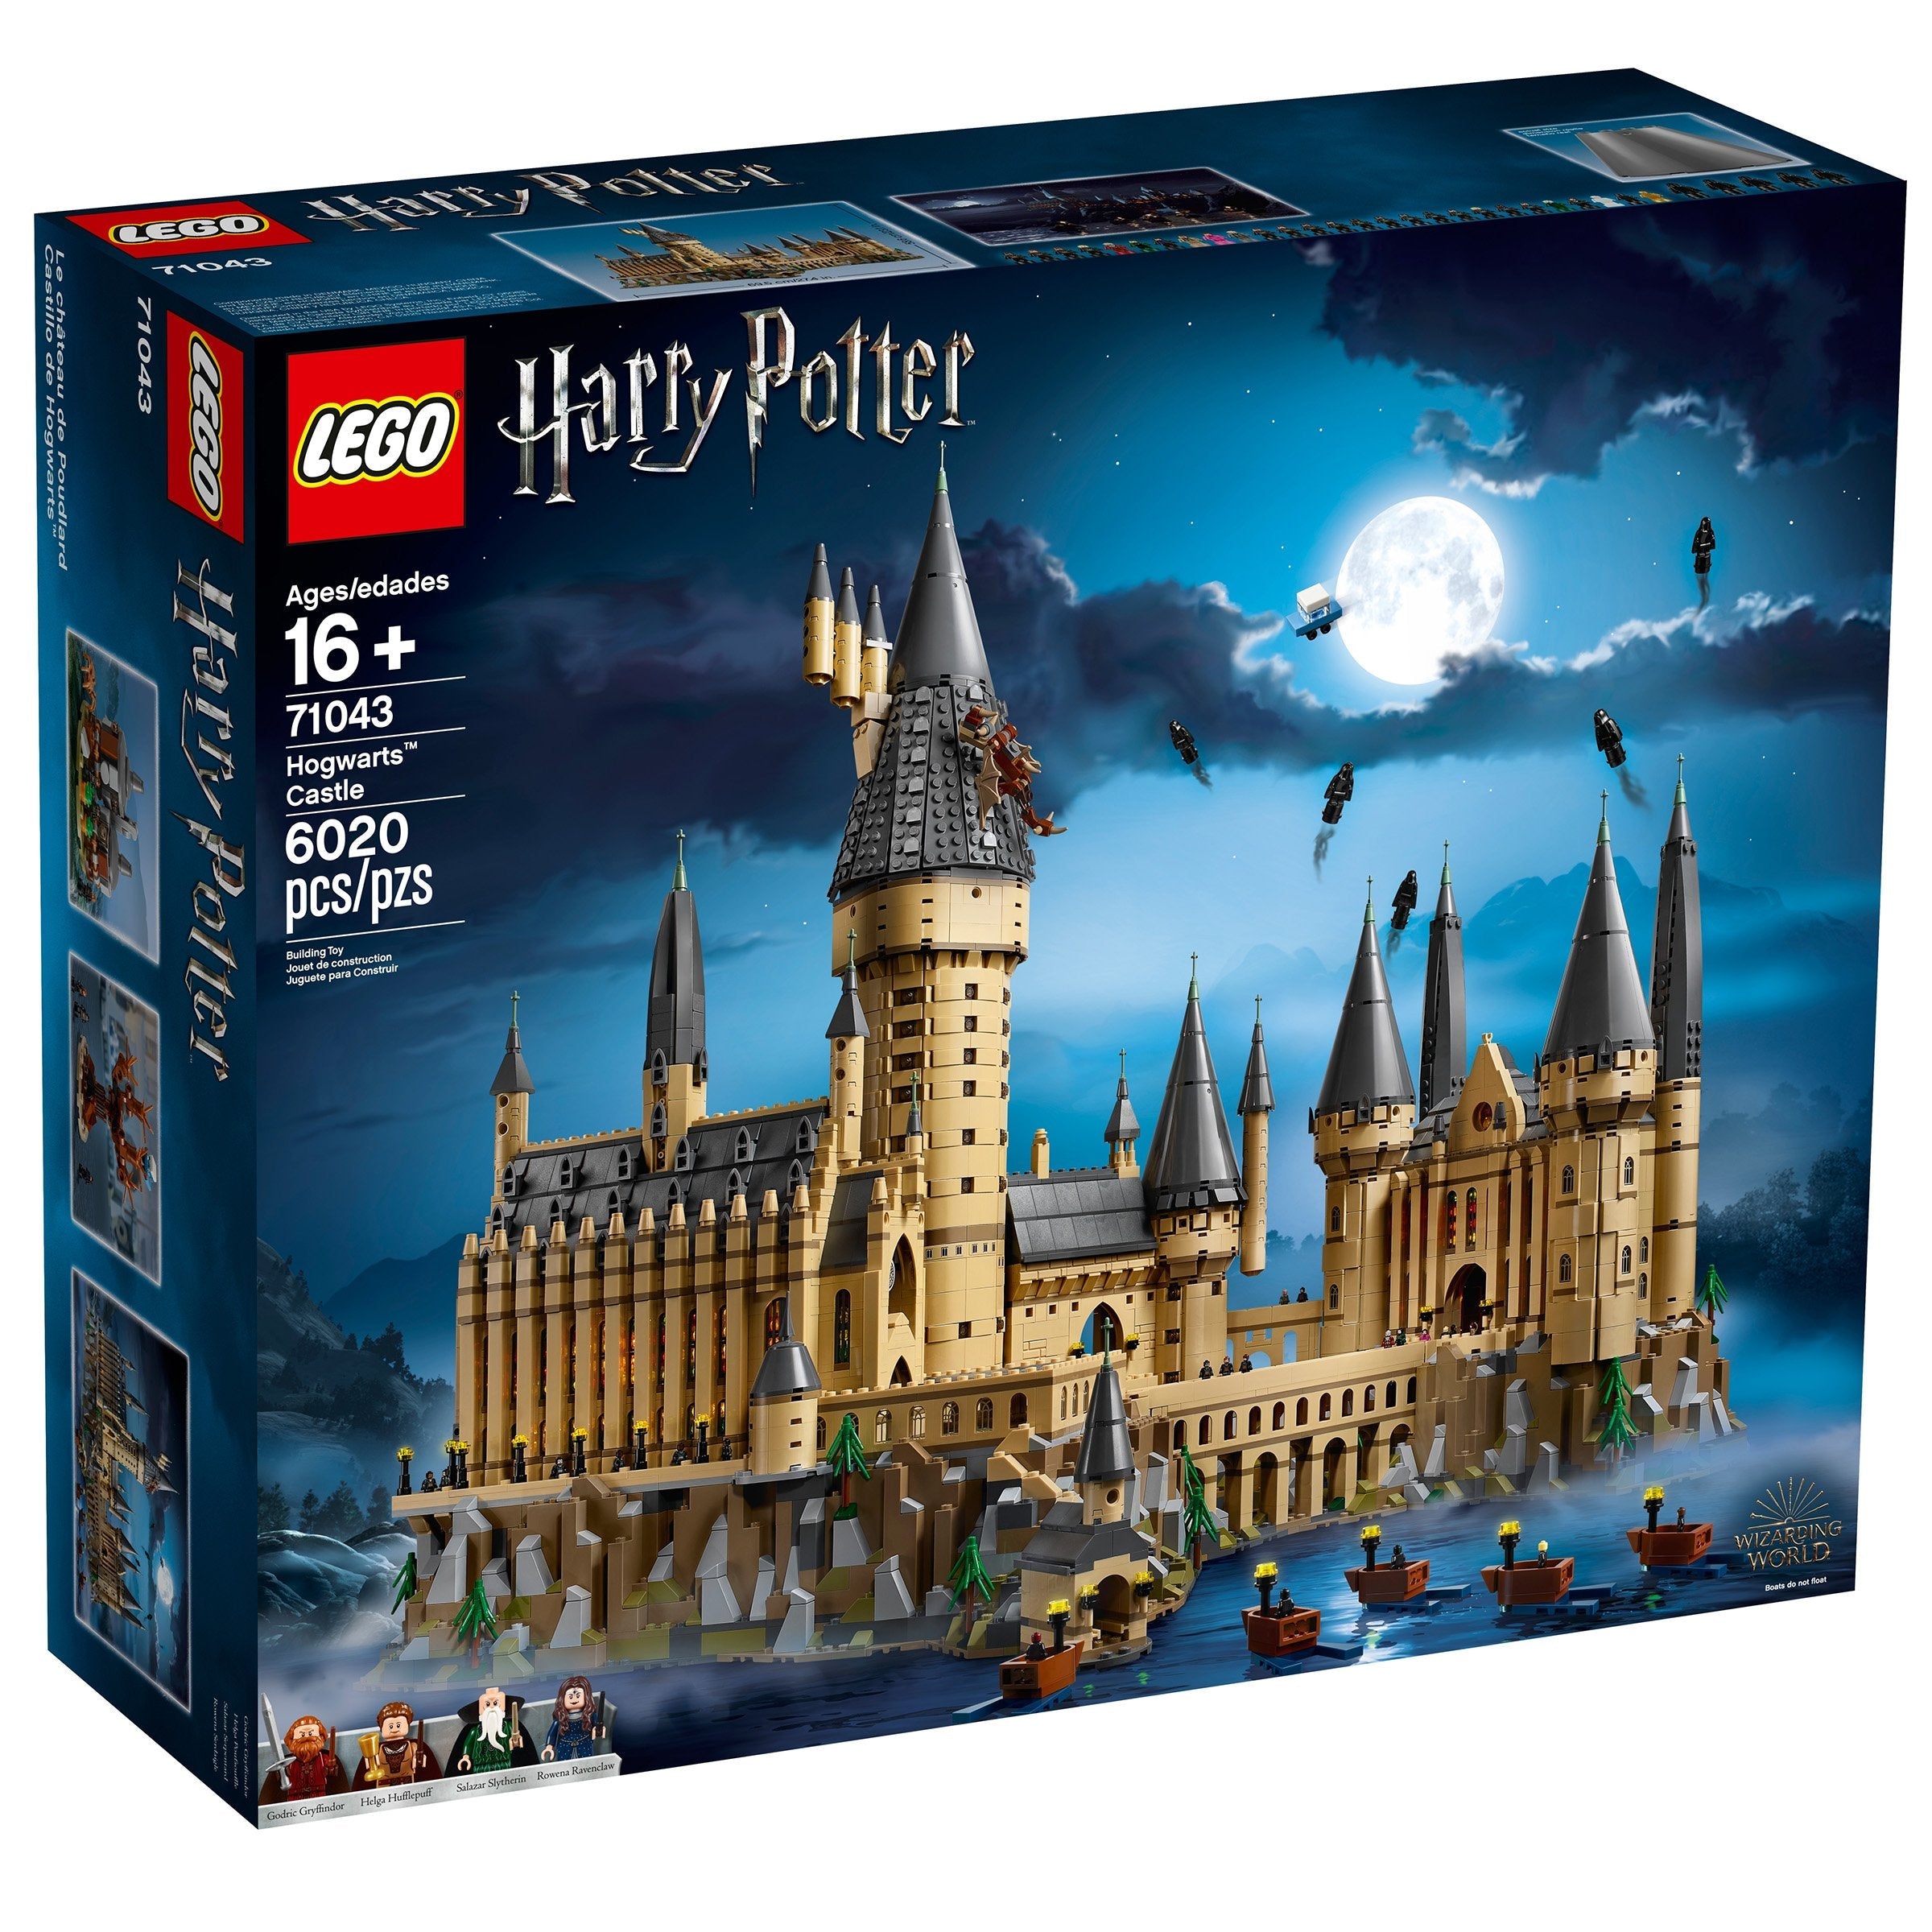 LEGO Harry Potter Hogwarts Castle (71043) - im GOLDSTIEN.SHOP verfügbar mit Gratisversand ab Schweizer Lager! (5702016110319)